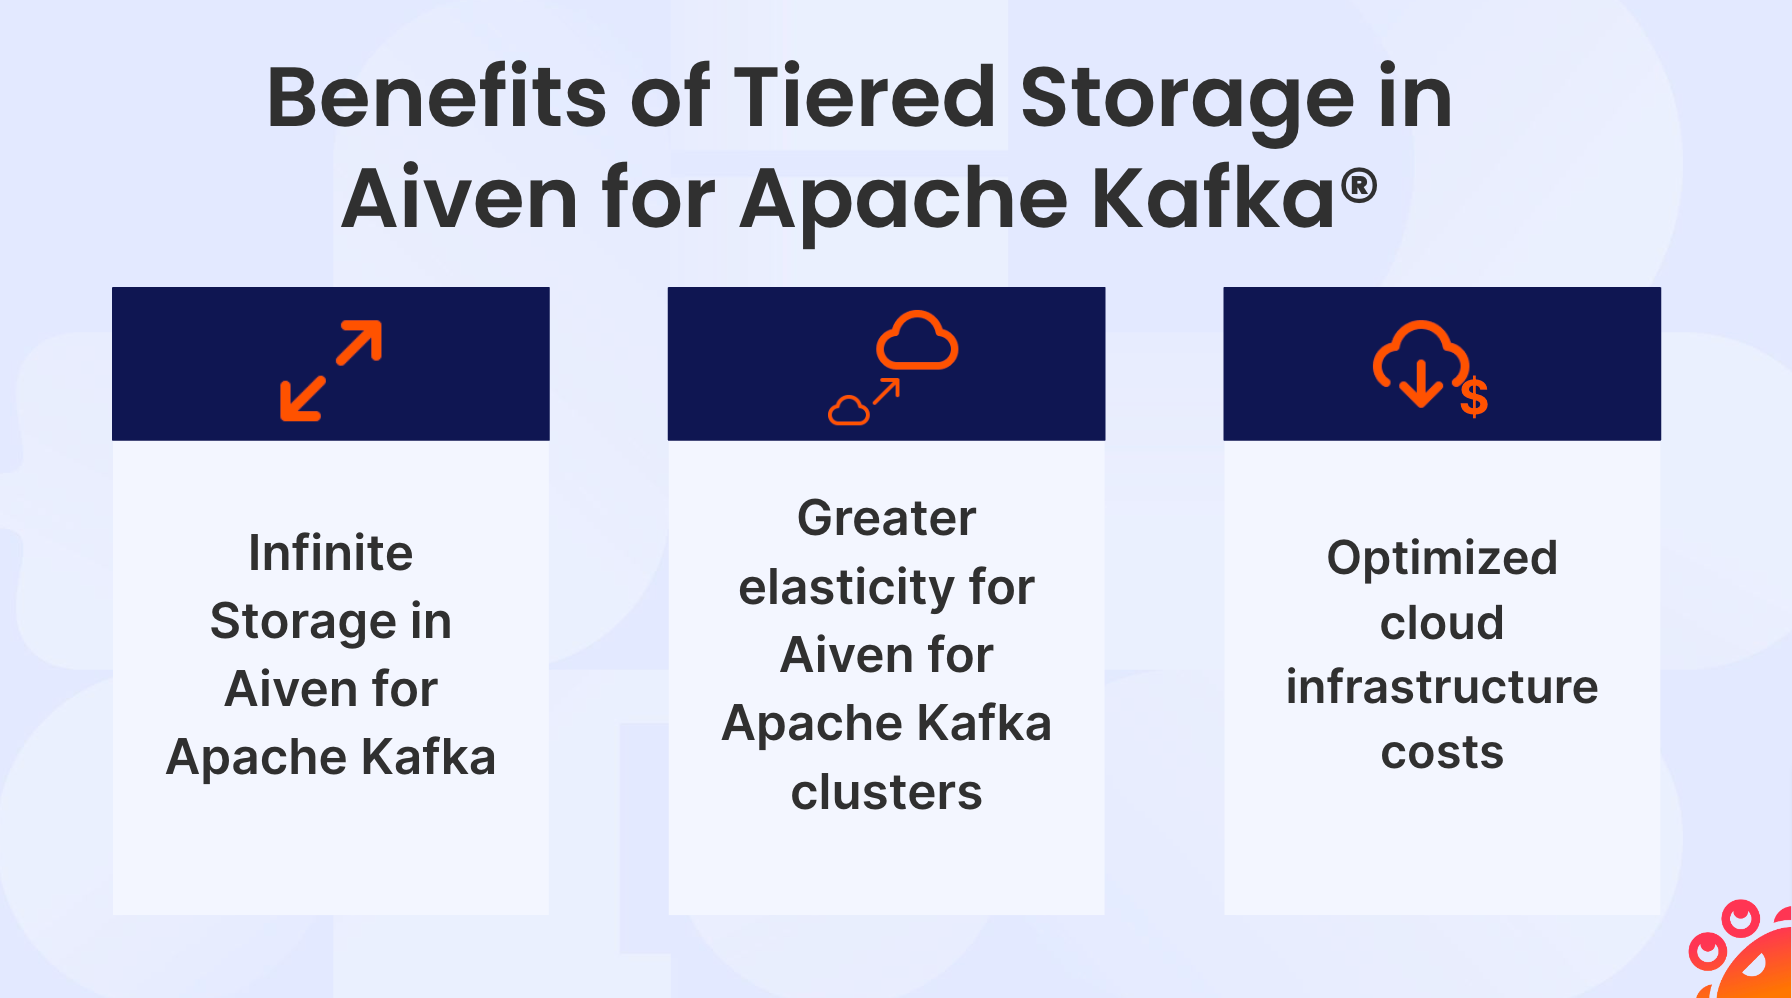 Tiered Storage for Apache Kafka benefits